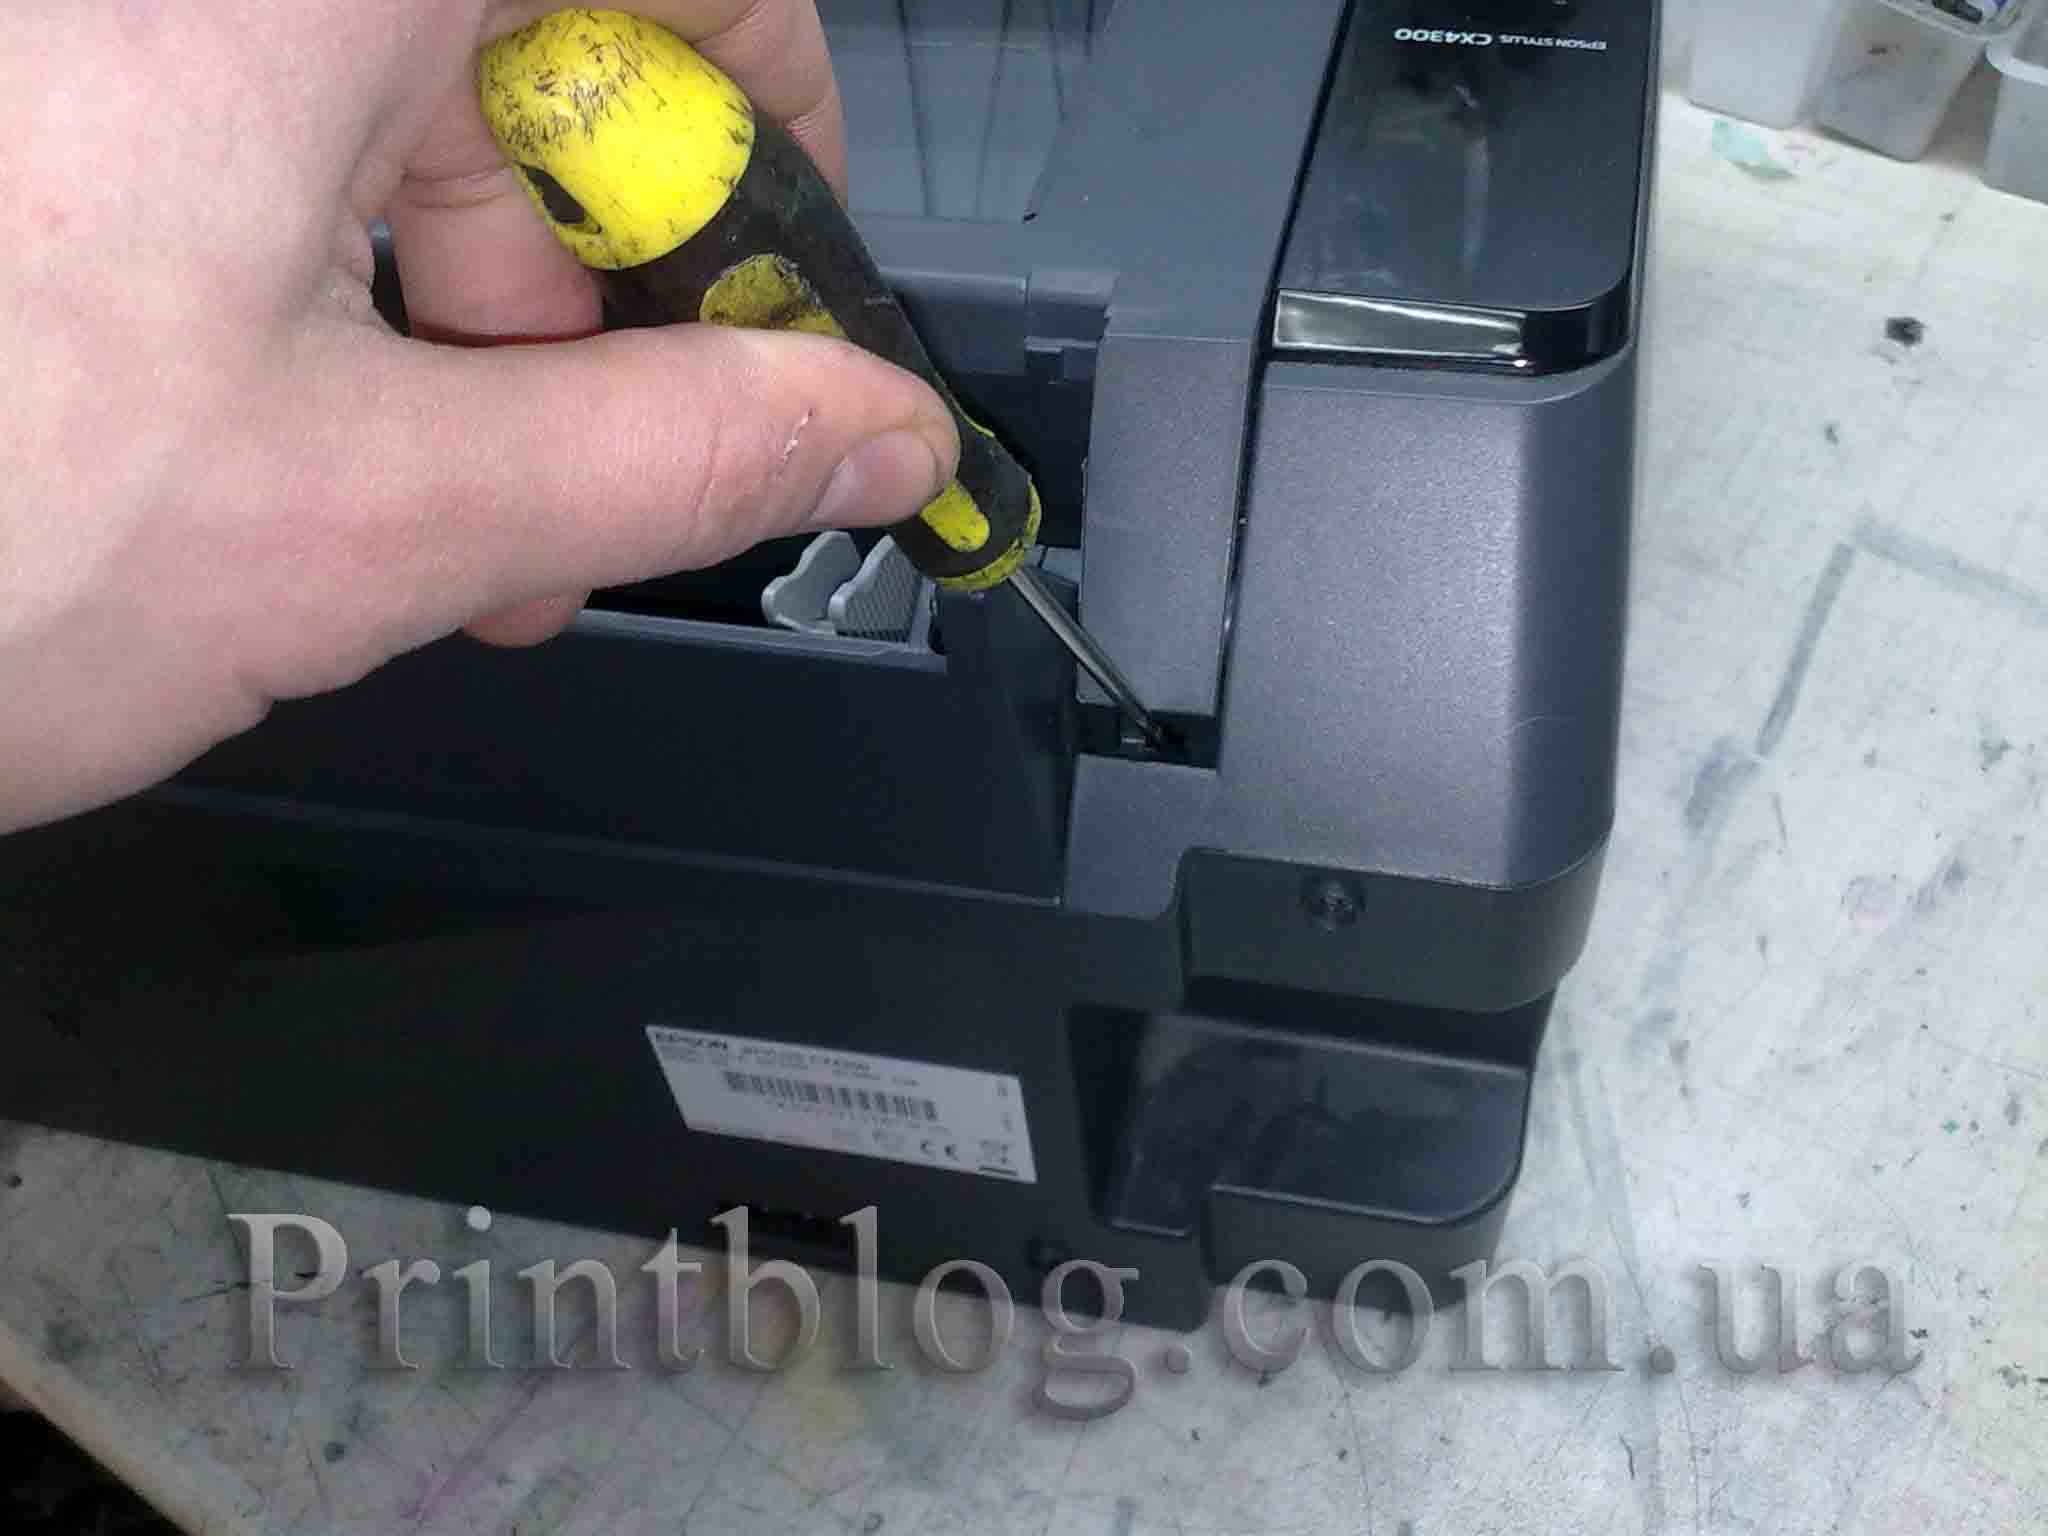 Программа сброса счётчика чернил для Epson Stylus Printers